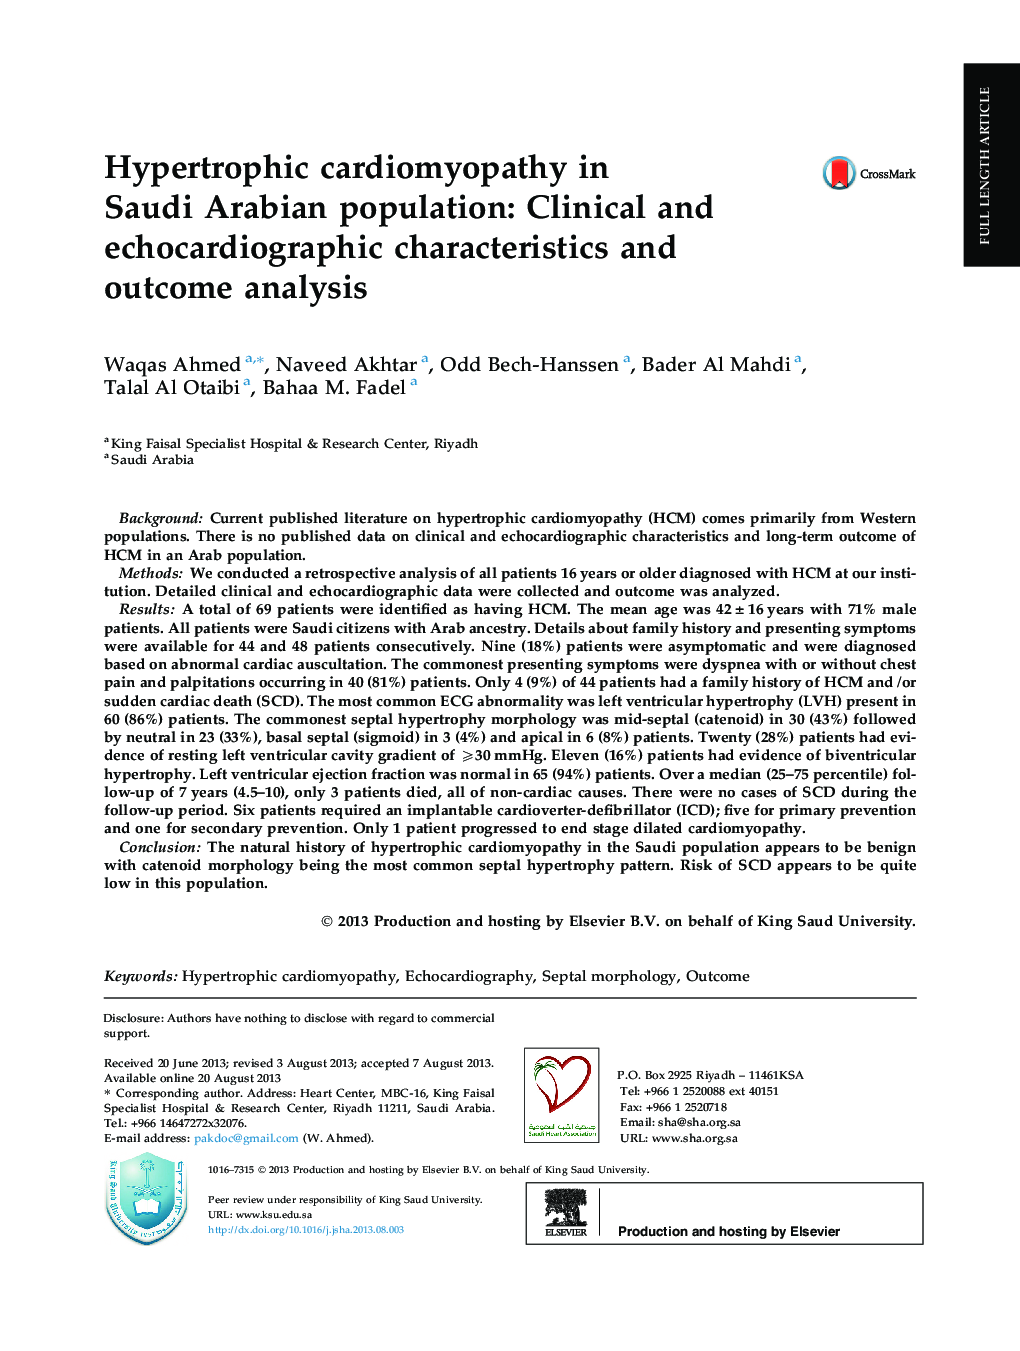 کاردیومیوپاتی هیپرتروفی در جمعیت عربستان سعودی: مشخصات بالینی و اکوکاردیوگرافی و تجزیه و تحلیل نتیجه 